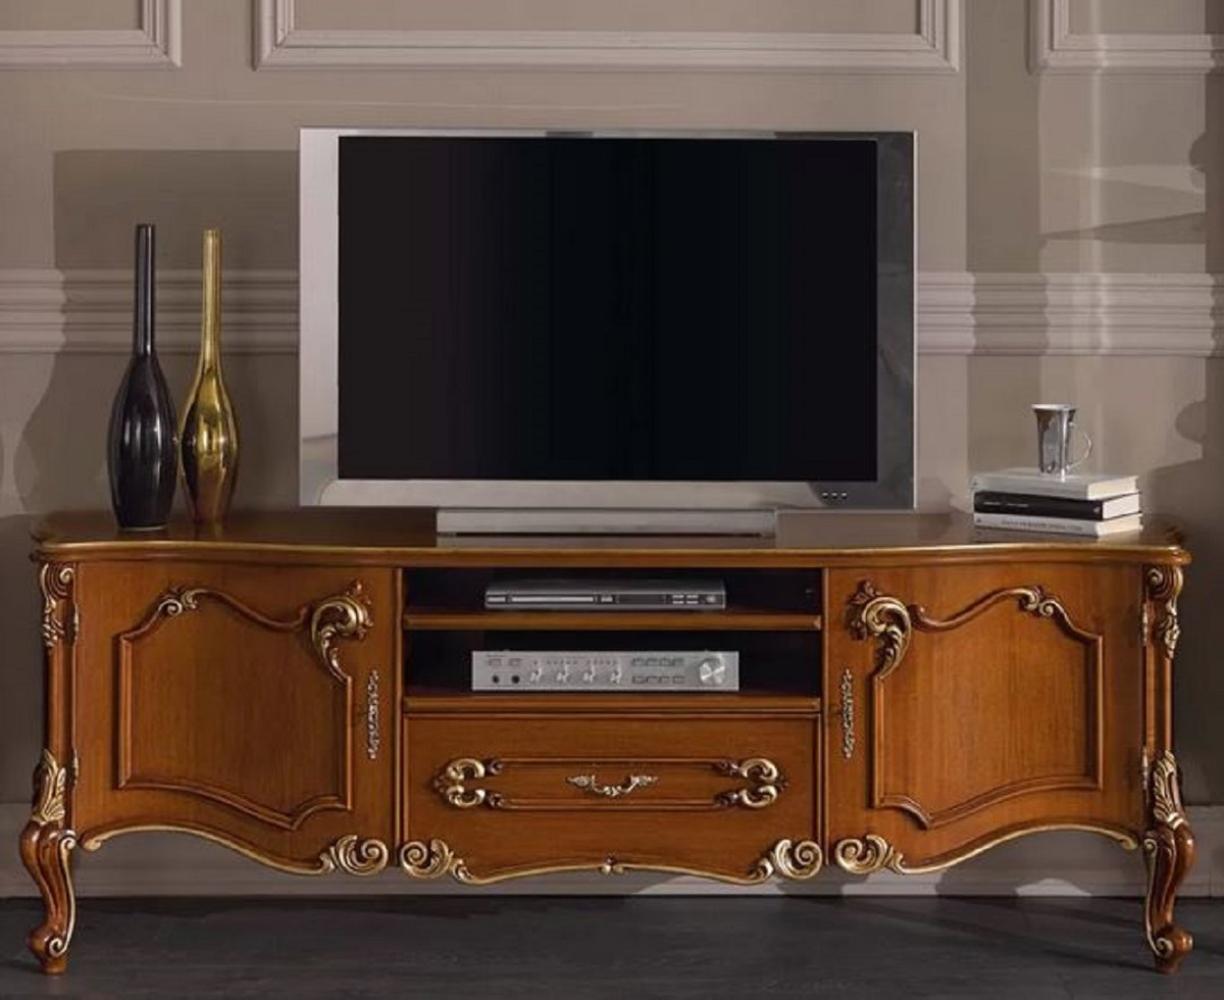 Casa Padrino Luxus Barock TV Schrank Braun / Gold - Handgefertigtes Massivholz Sideboard mit 2 Türen und Schublade - Barock Wohnzimmer Möbel - Luxus Qualität - Made in Italy Bild 1